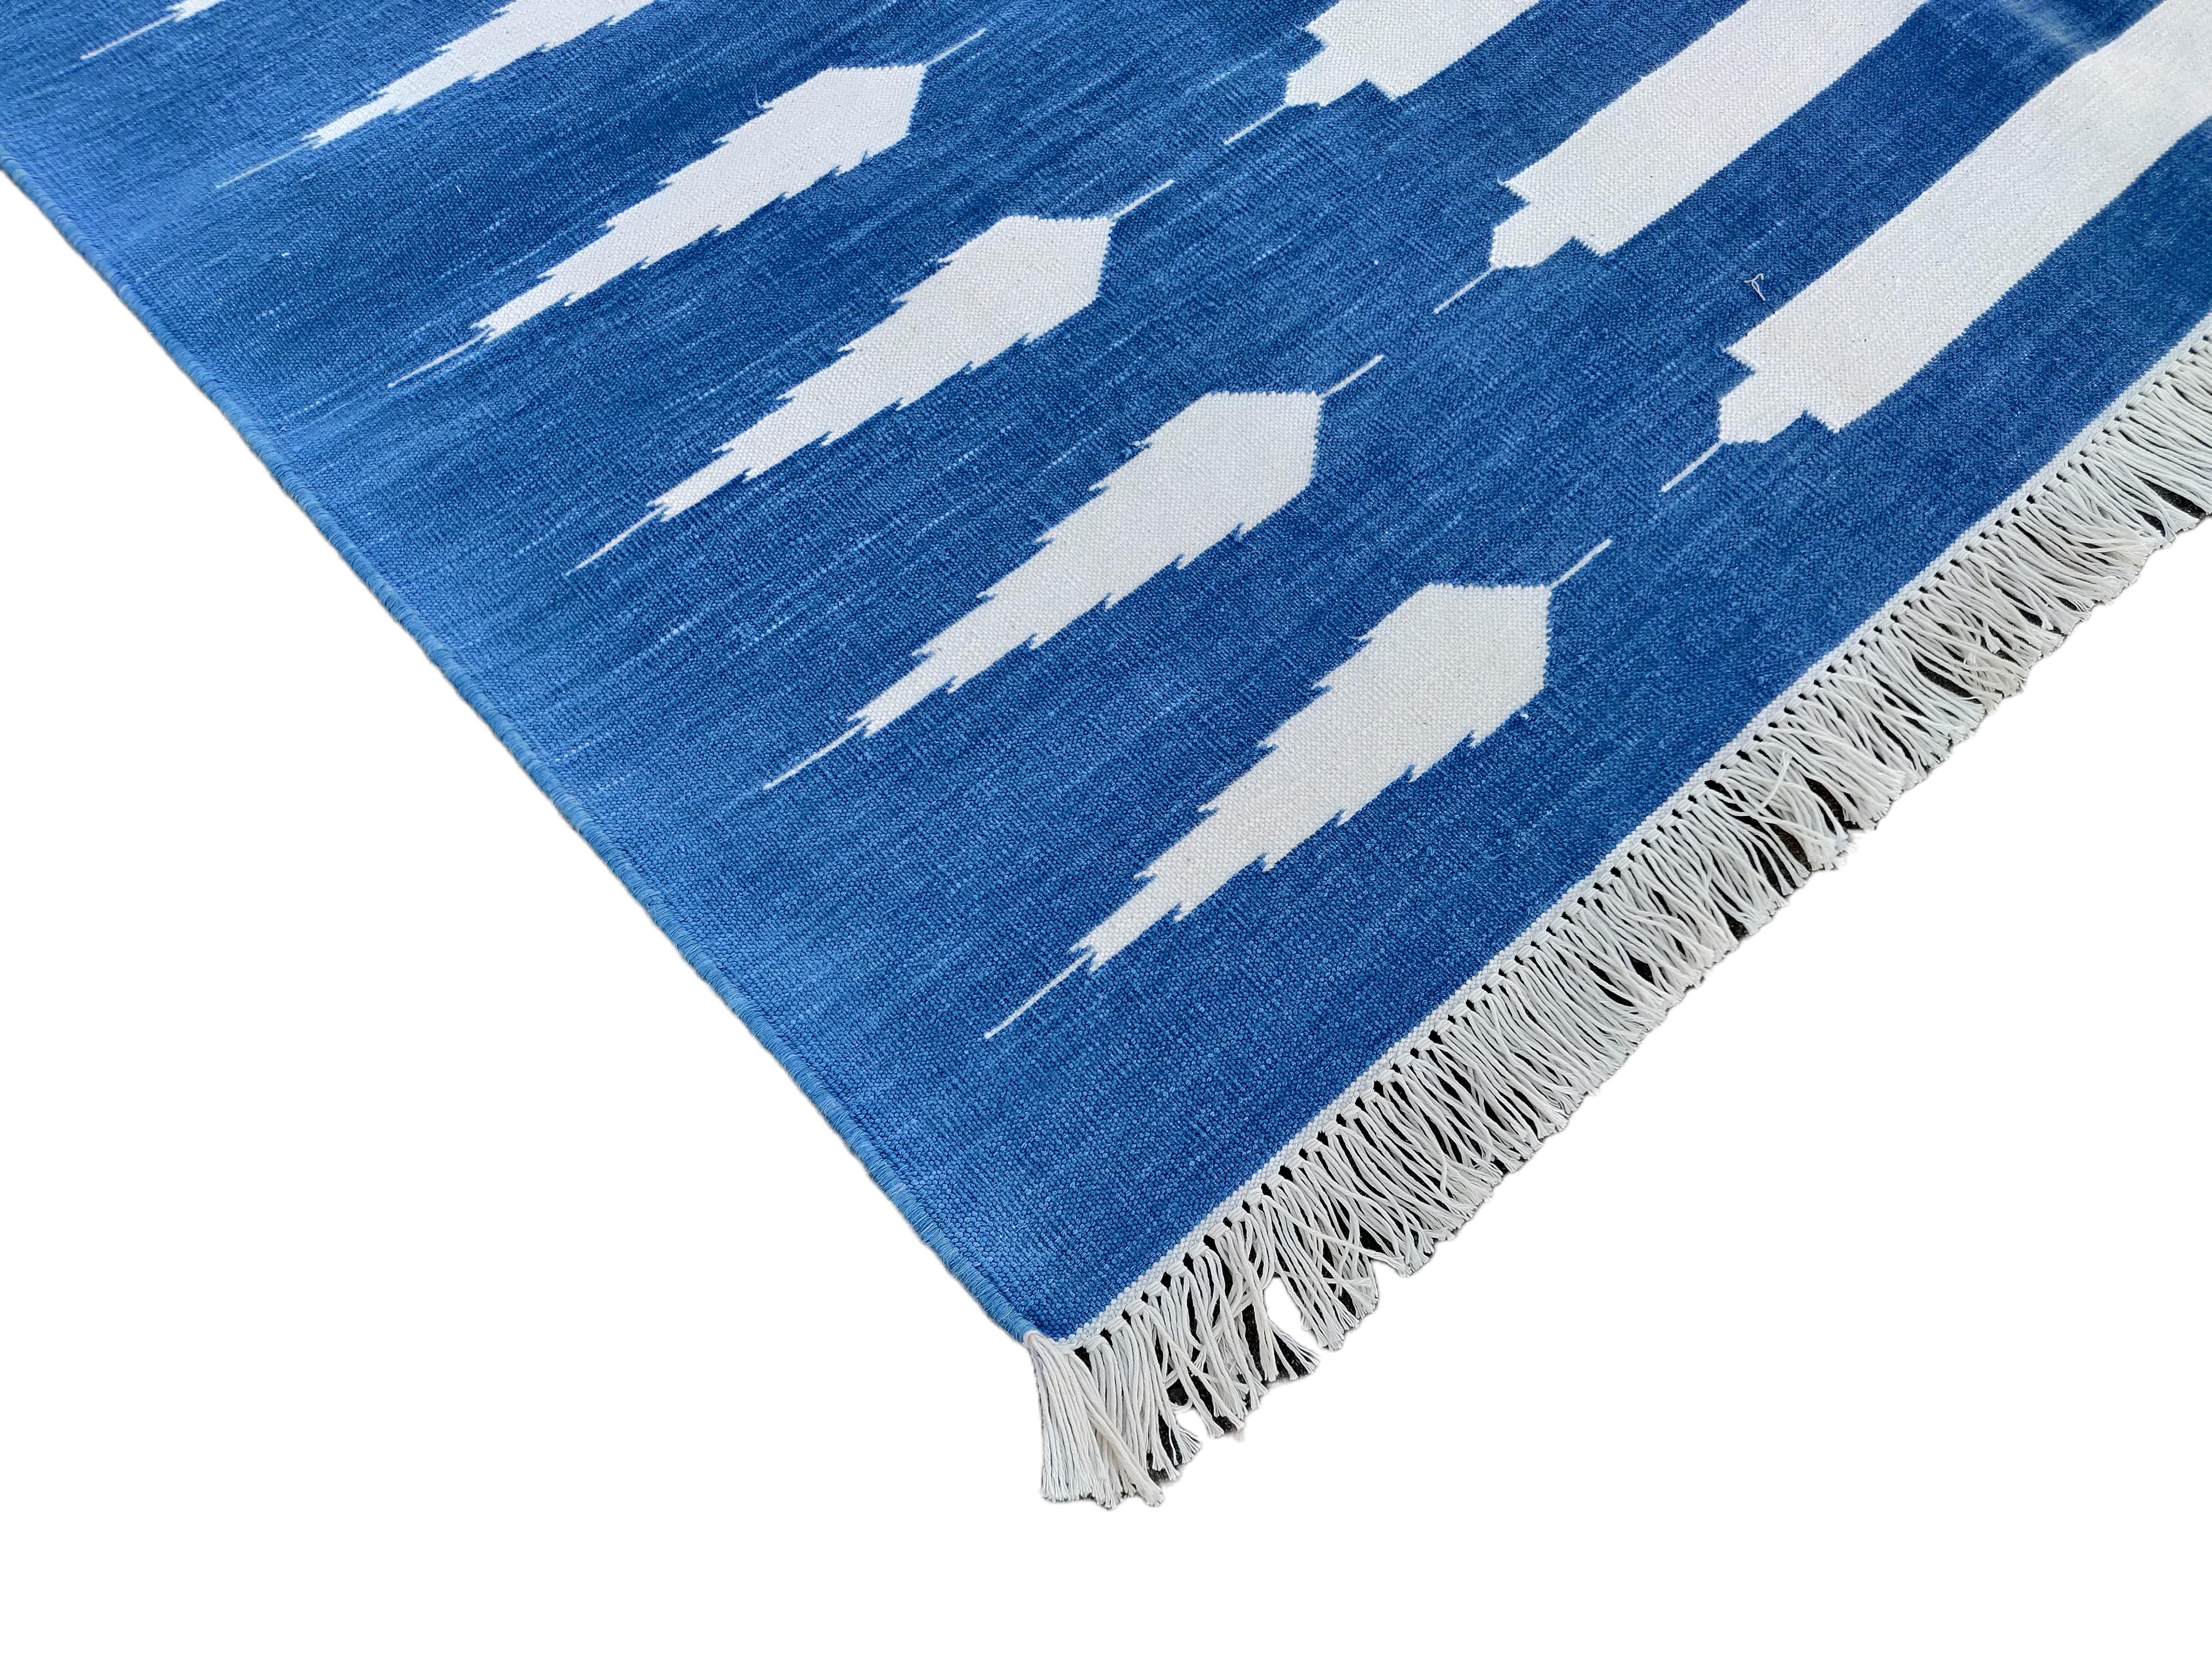 Tapis indien Dhurrie en coton teint dans la masse bleu indigo et blanc rayé-4'x6' 

Ces dhurries spéciales à tissage plat sont tissées à la main avec du fil 100 % coton 15 plis. En raison des techniques de fabrication spéciales utilisées pour créer